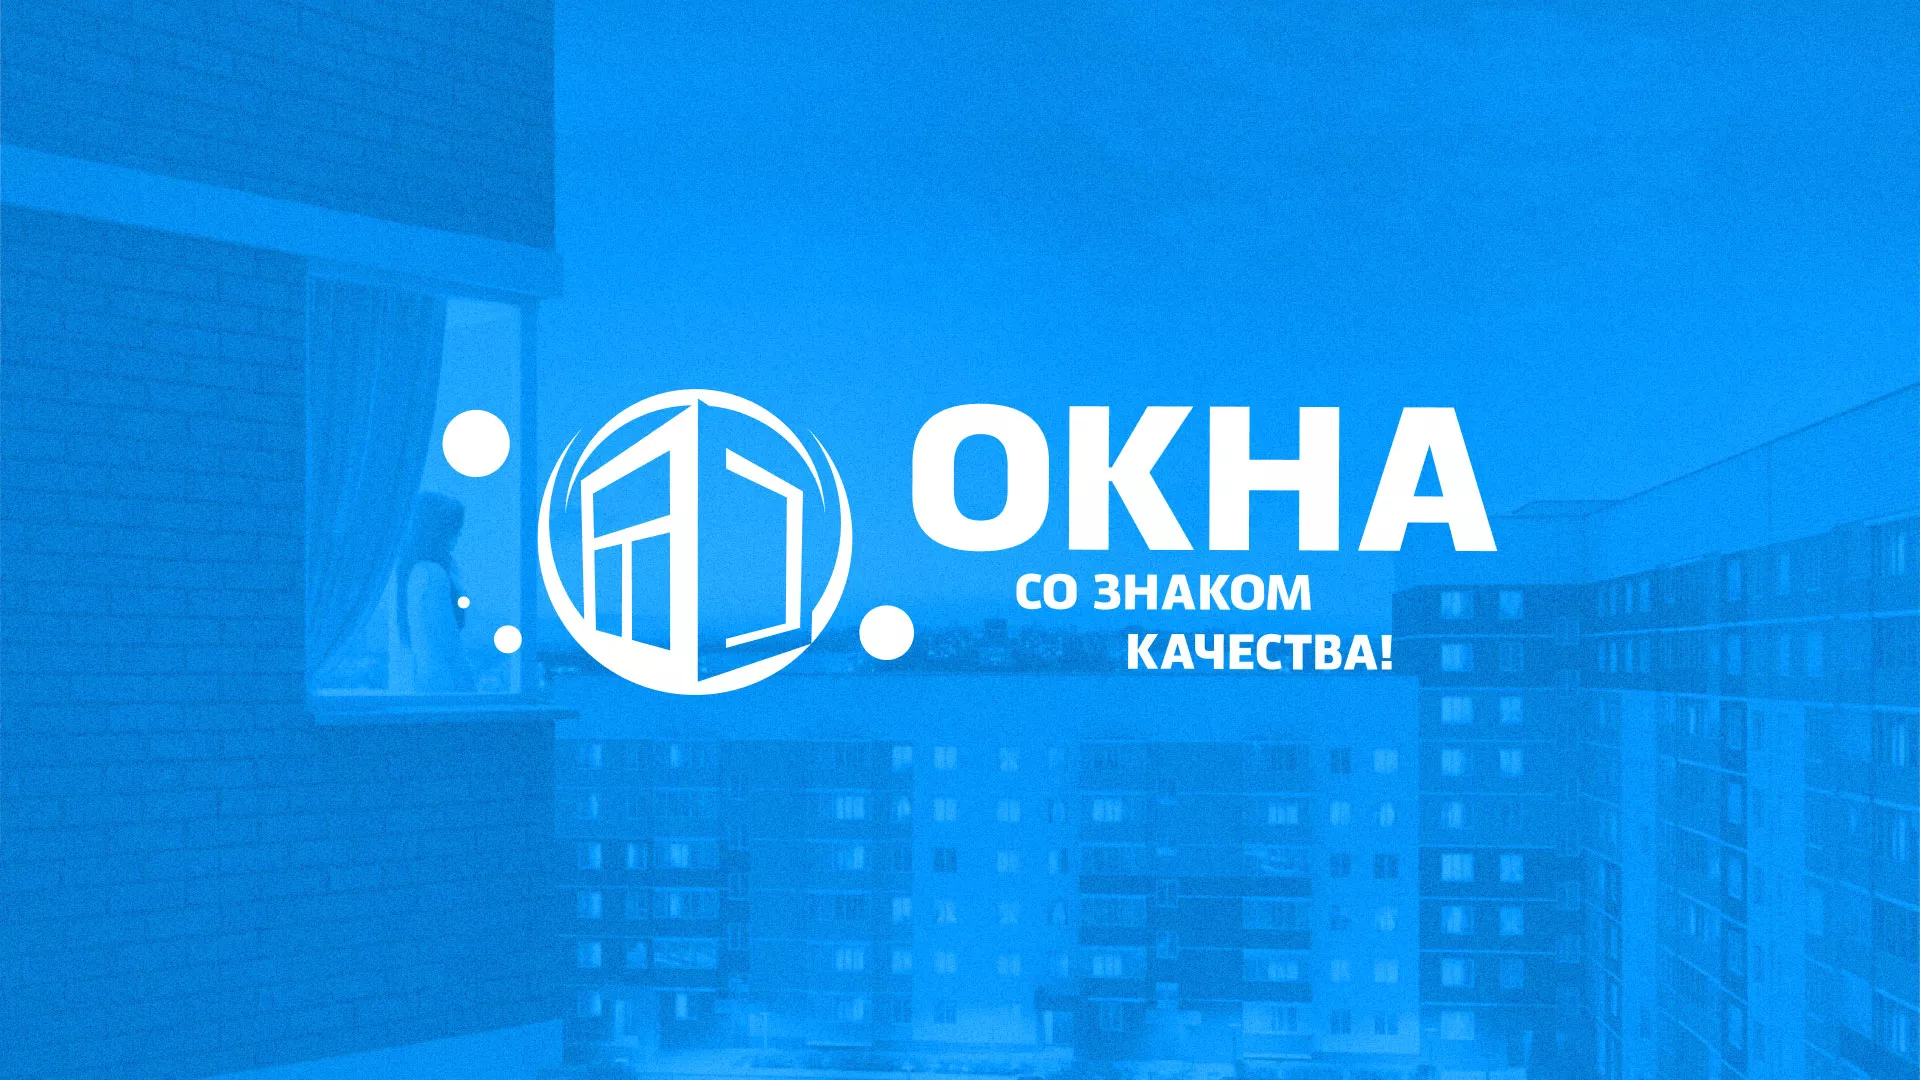 Создание сайта компании «Окна ВИДО» в Челябинске